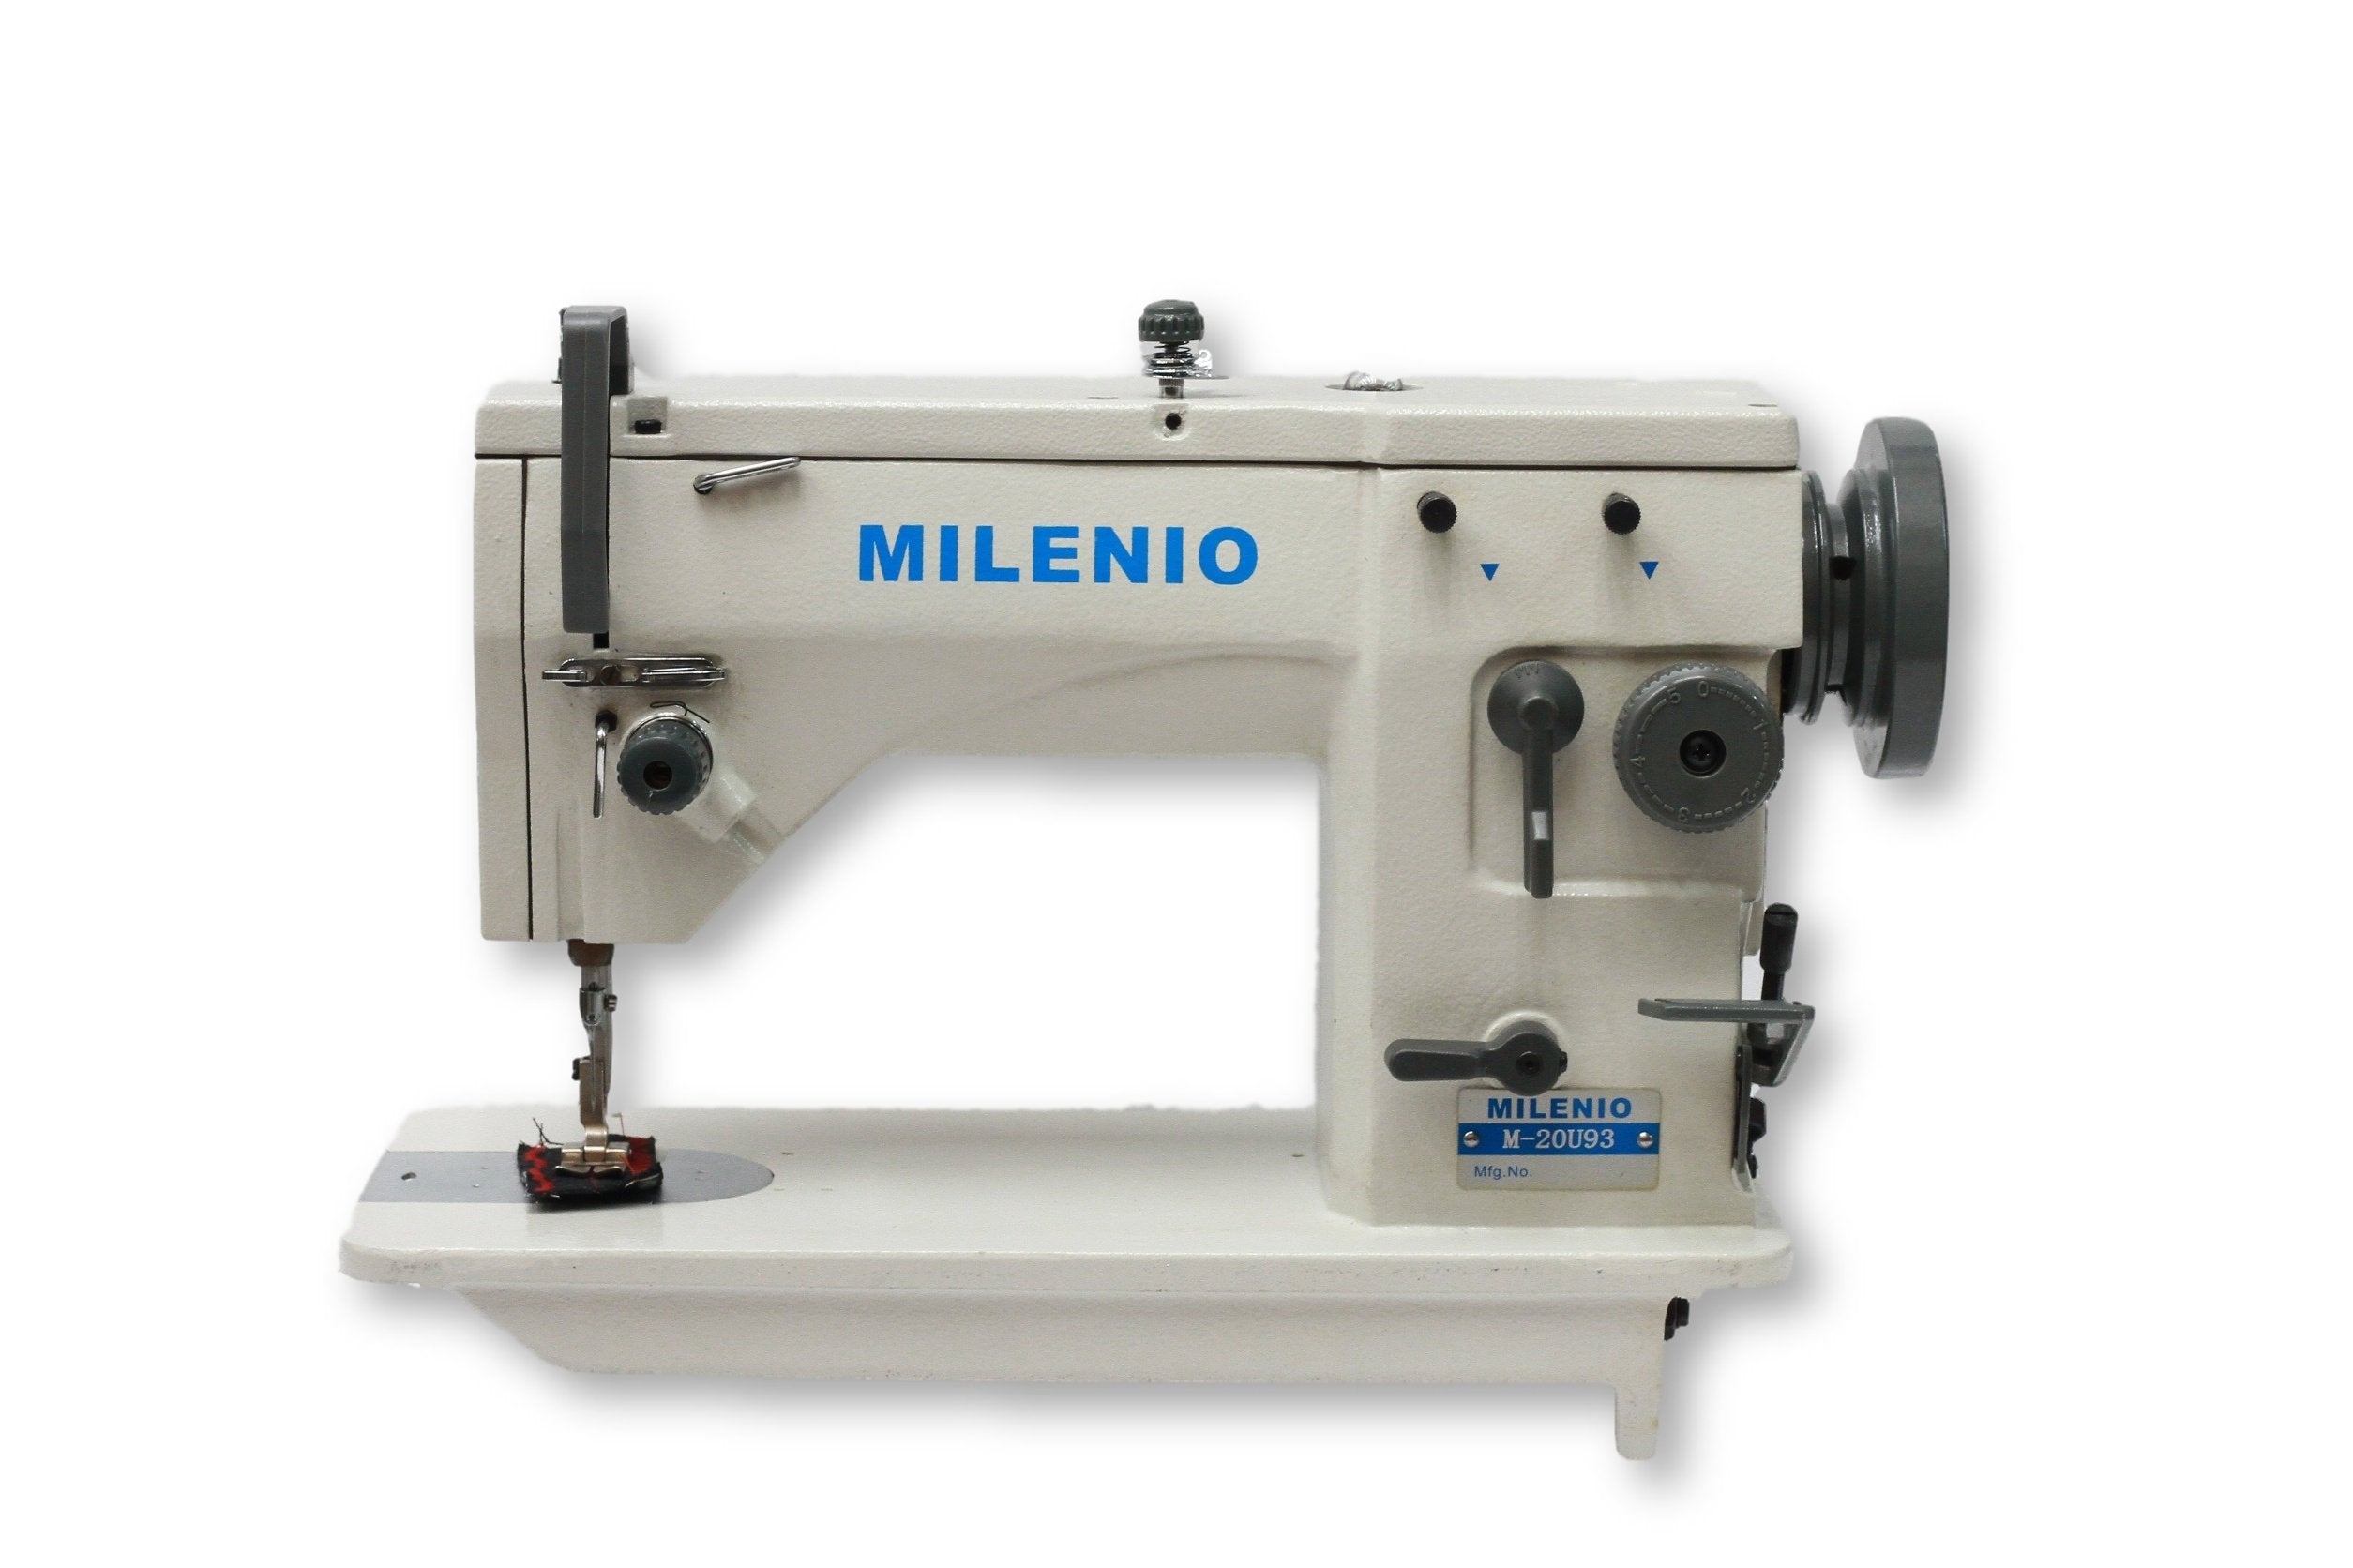  Kunpeng Máquina de coser industrial con bisagras